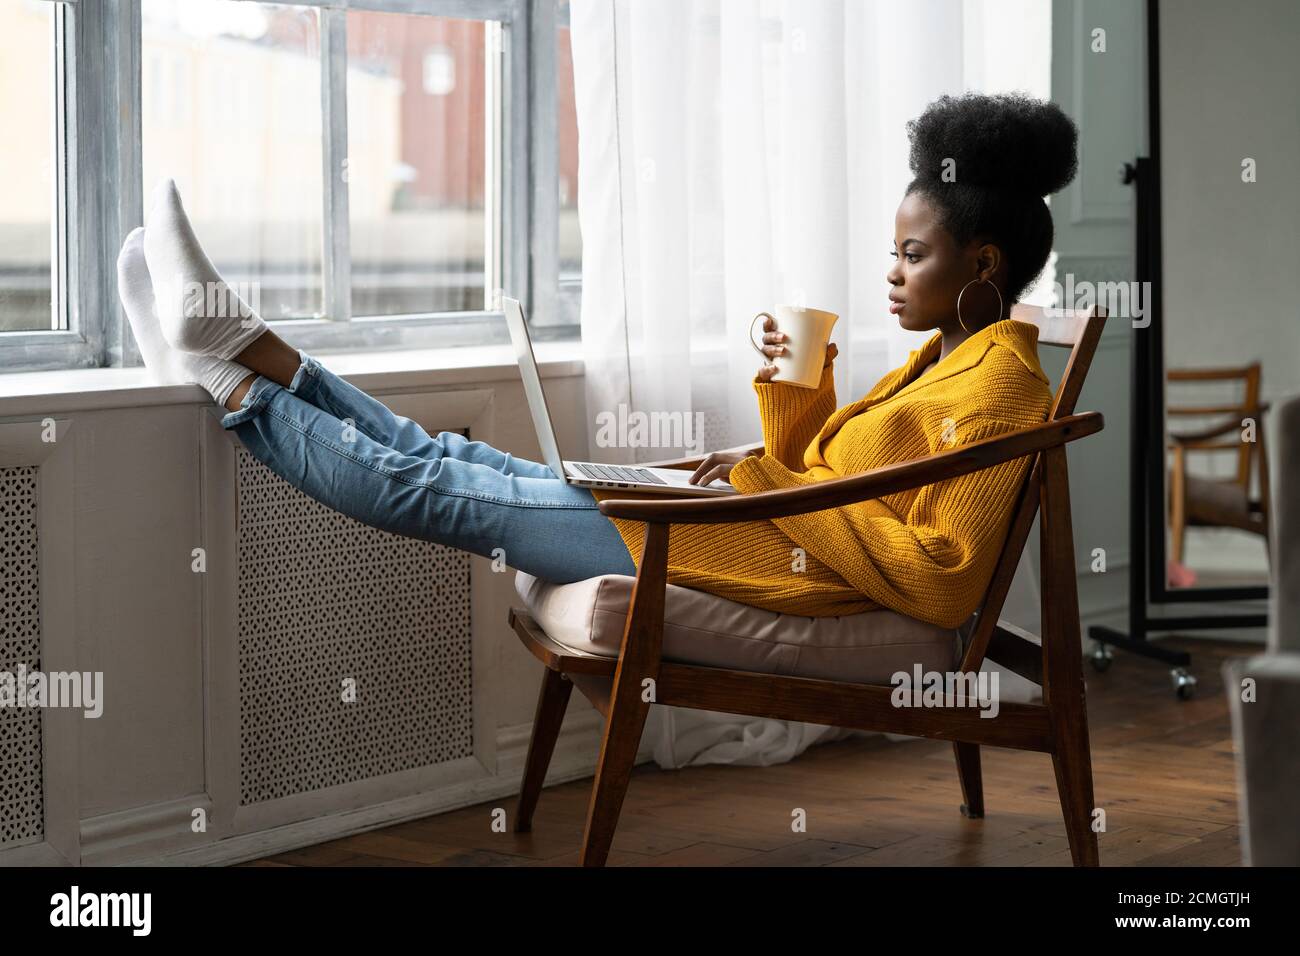 Femme afro-américaine freelance avec afro coiffure porter gilet jaune repos, assis sur une chaise, jambes penchées sur le seuil de la fenêtre, étudier à distance, wor Banque D'Images